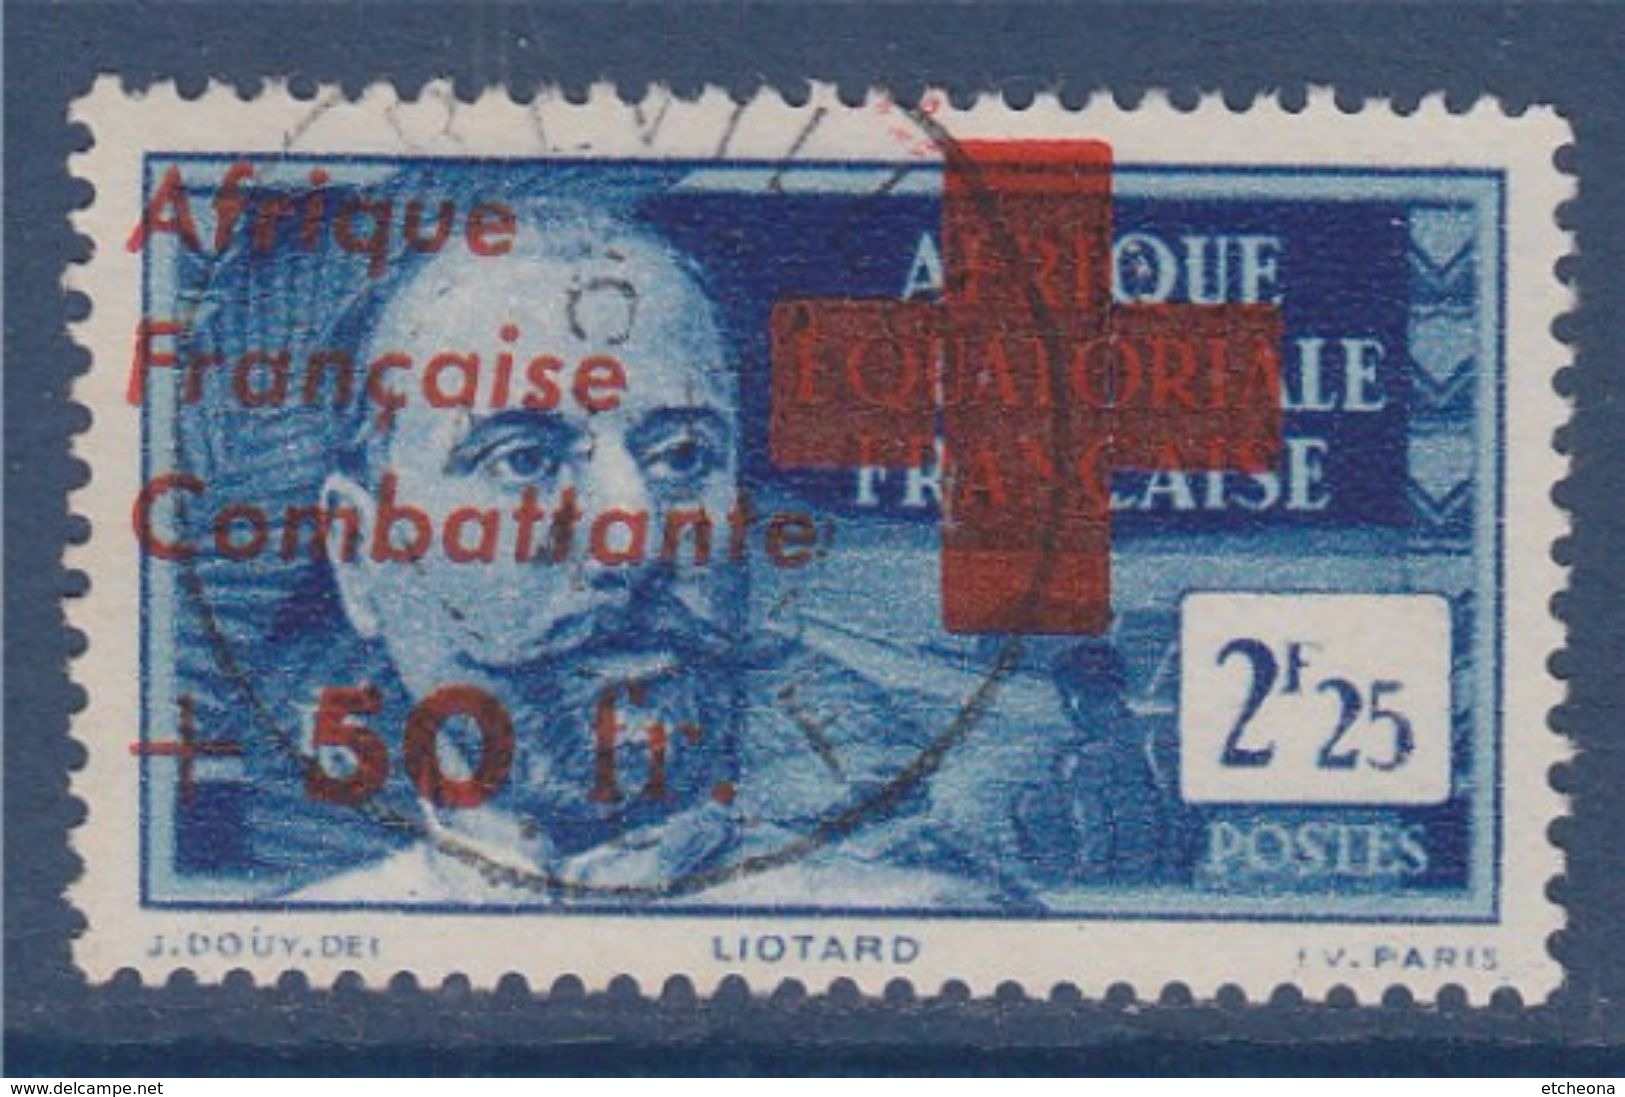 = Afrique Equatoriale Française Surchargés Afrique Française Combattante N°165 Libreville 6.8.43 - Oblitérés